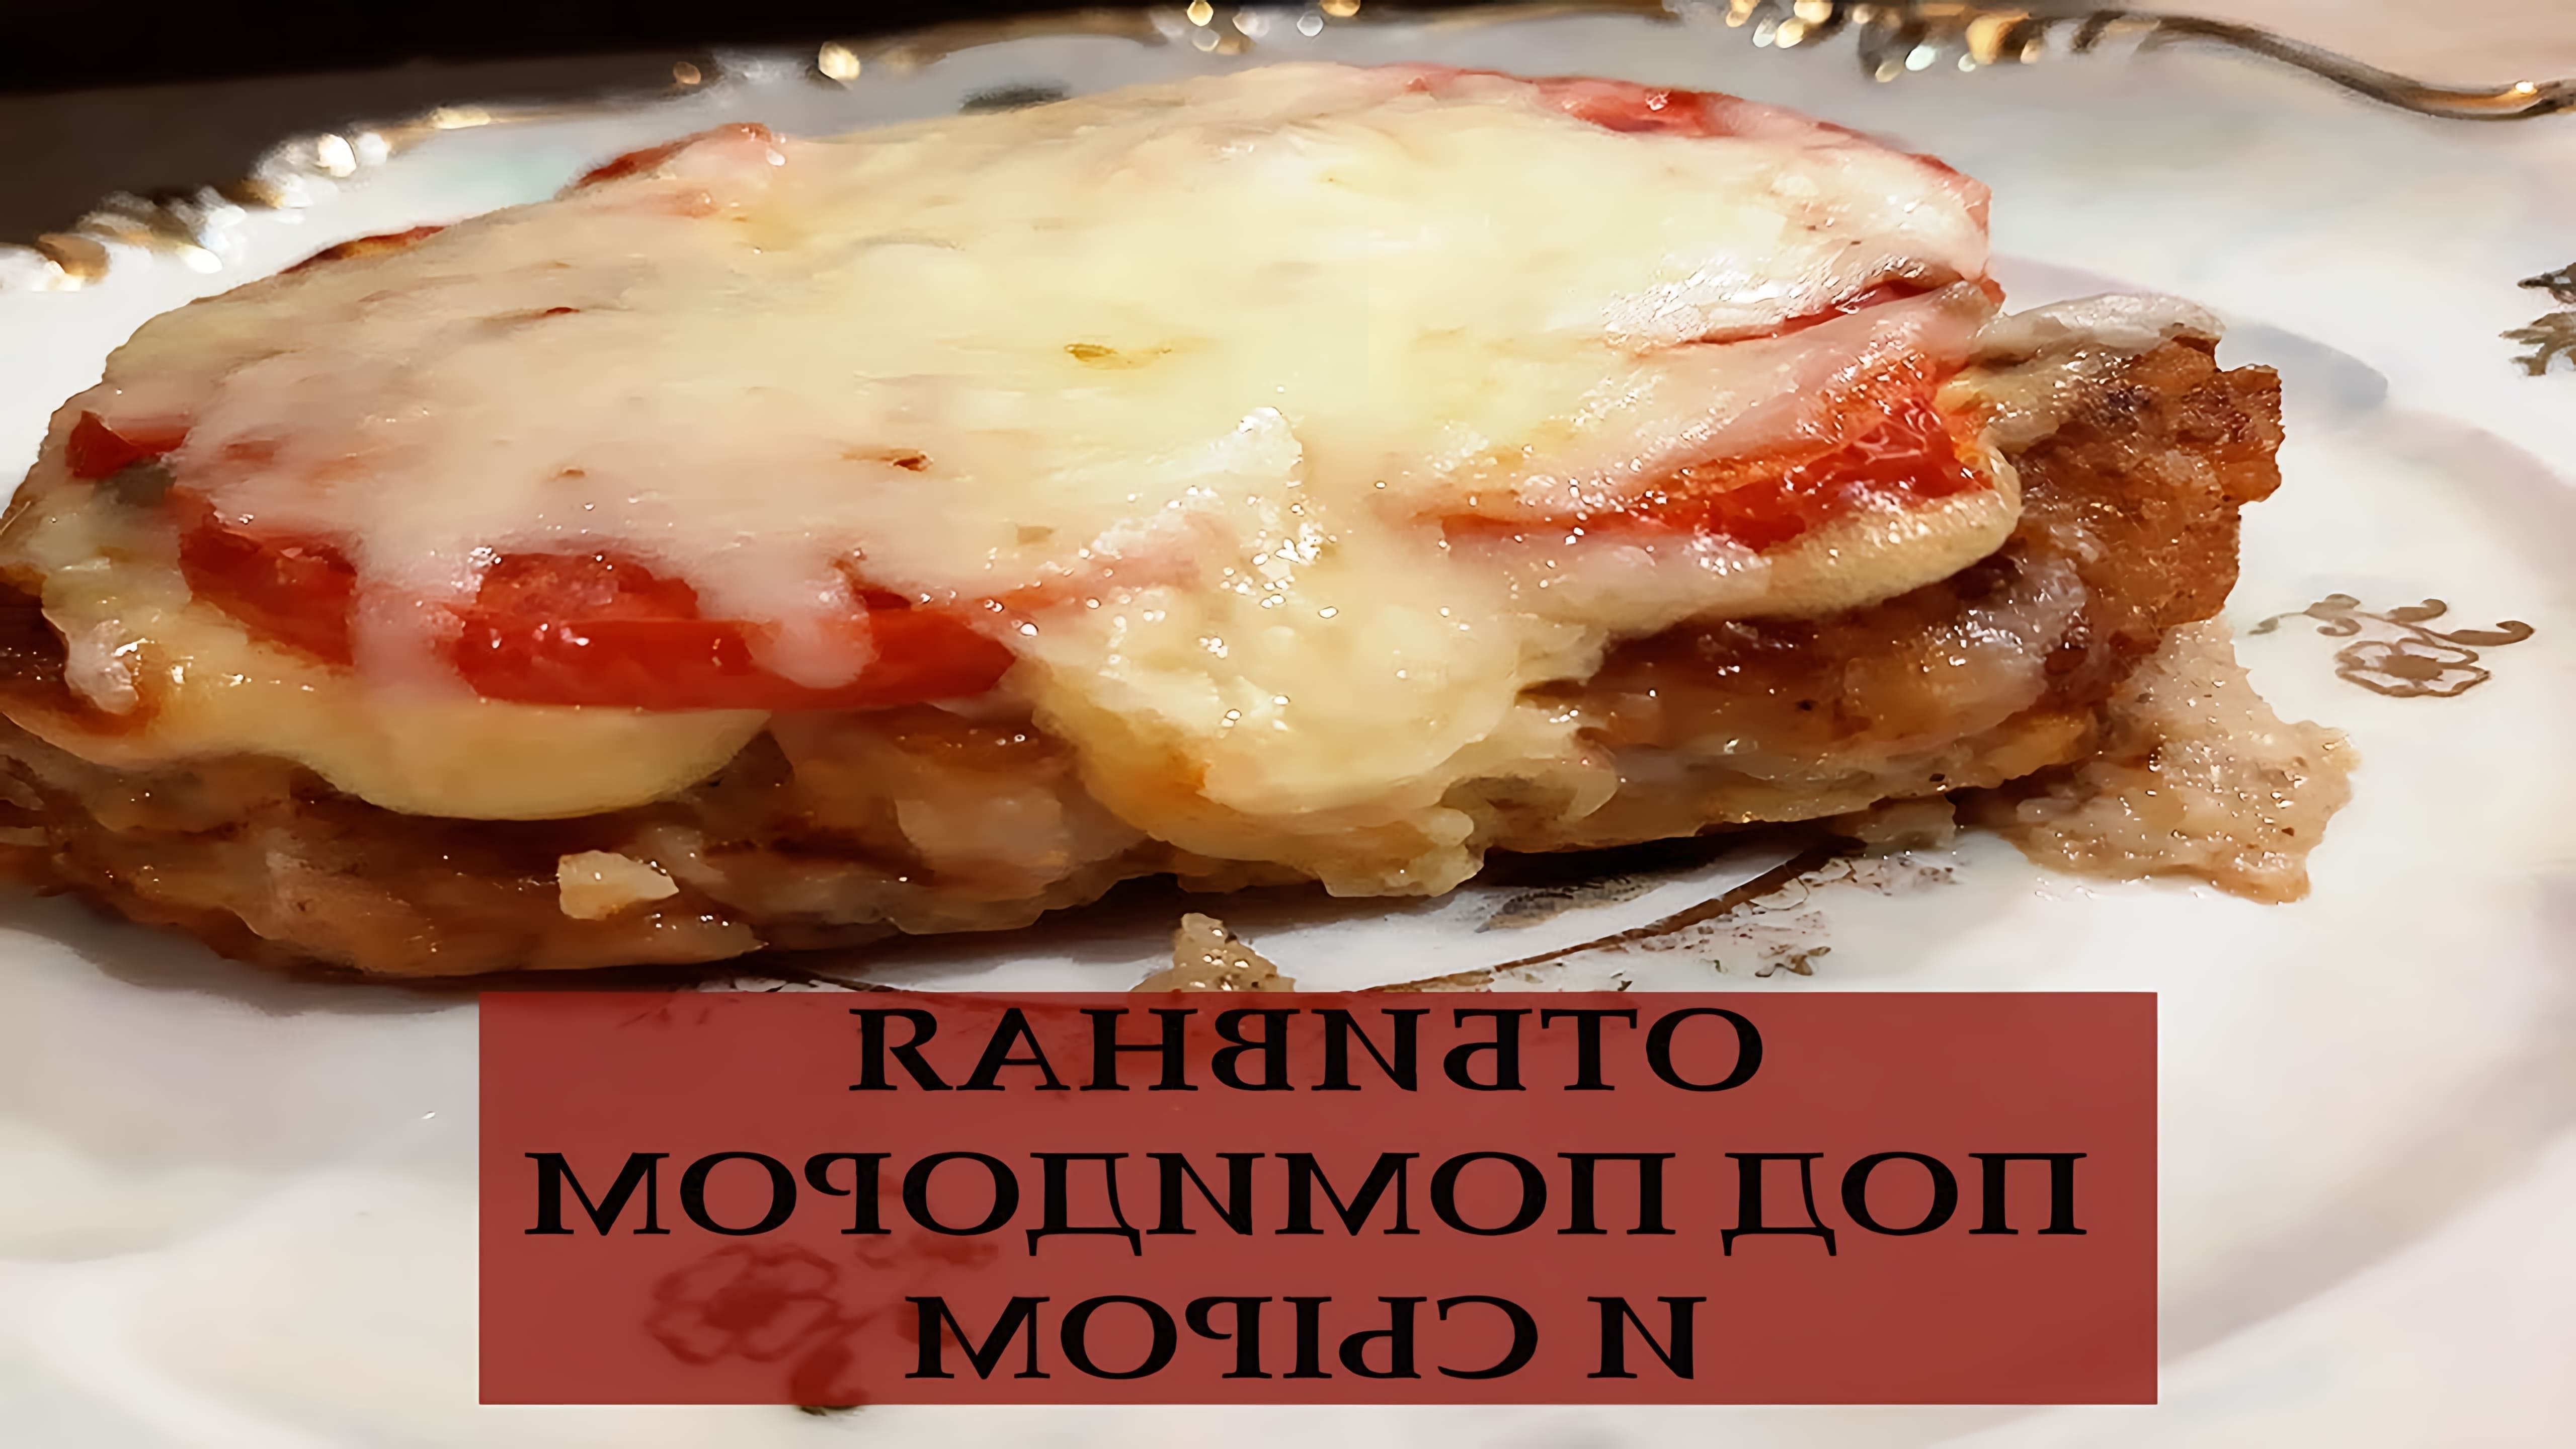 В этом видео демонстрируется рецепт приготовления отбивной под помидорами и сыром